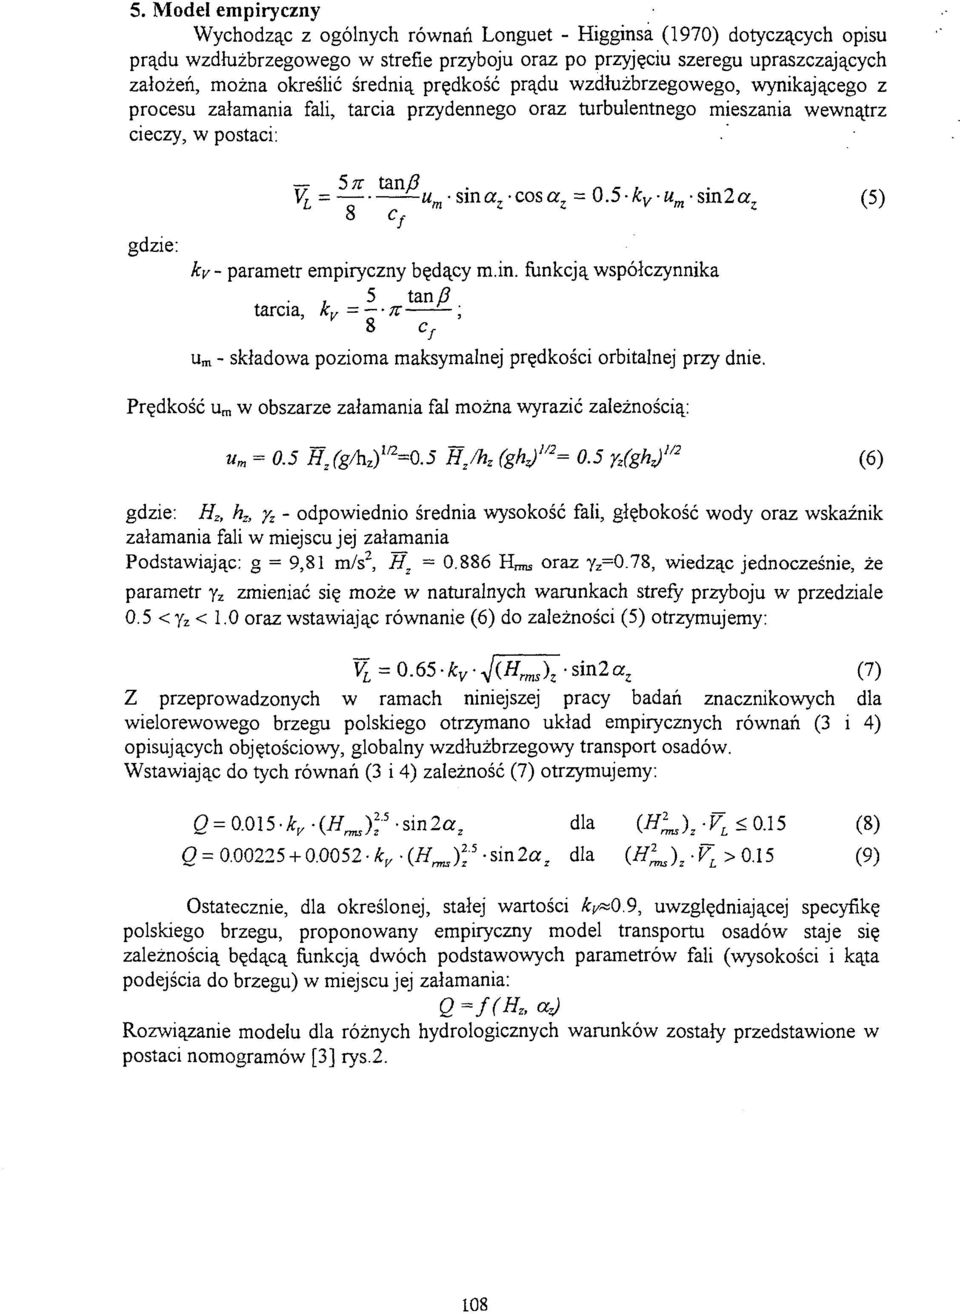 . r V L = - ^u m -sma z -cosa z = 0.5-kyu m -sm2cc z (5) o Cc ky- parametr empiryczny będący m.in. funkcją współczynnika, 5 tan/?